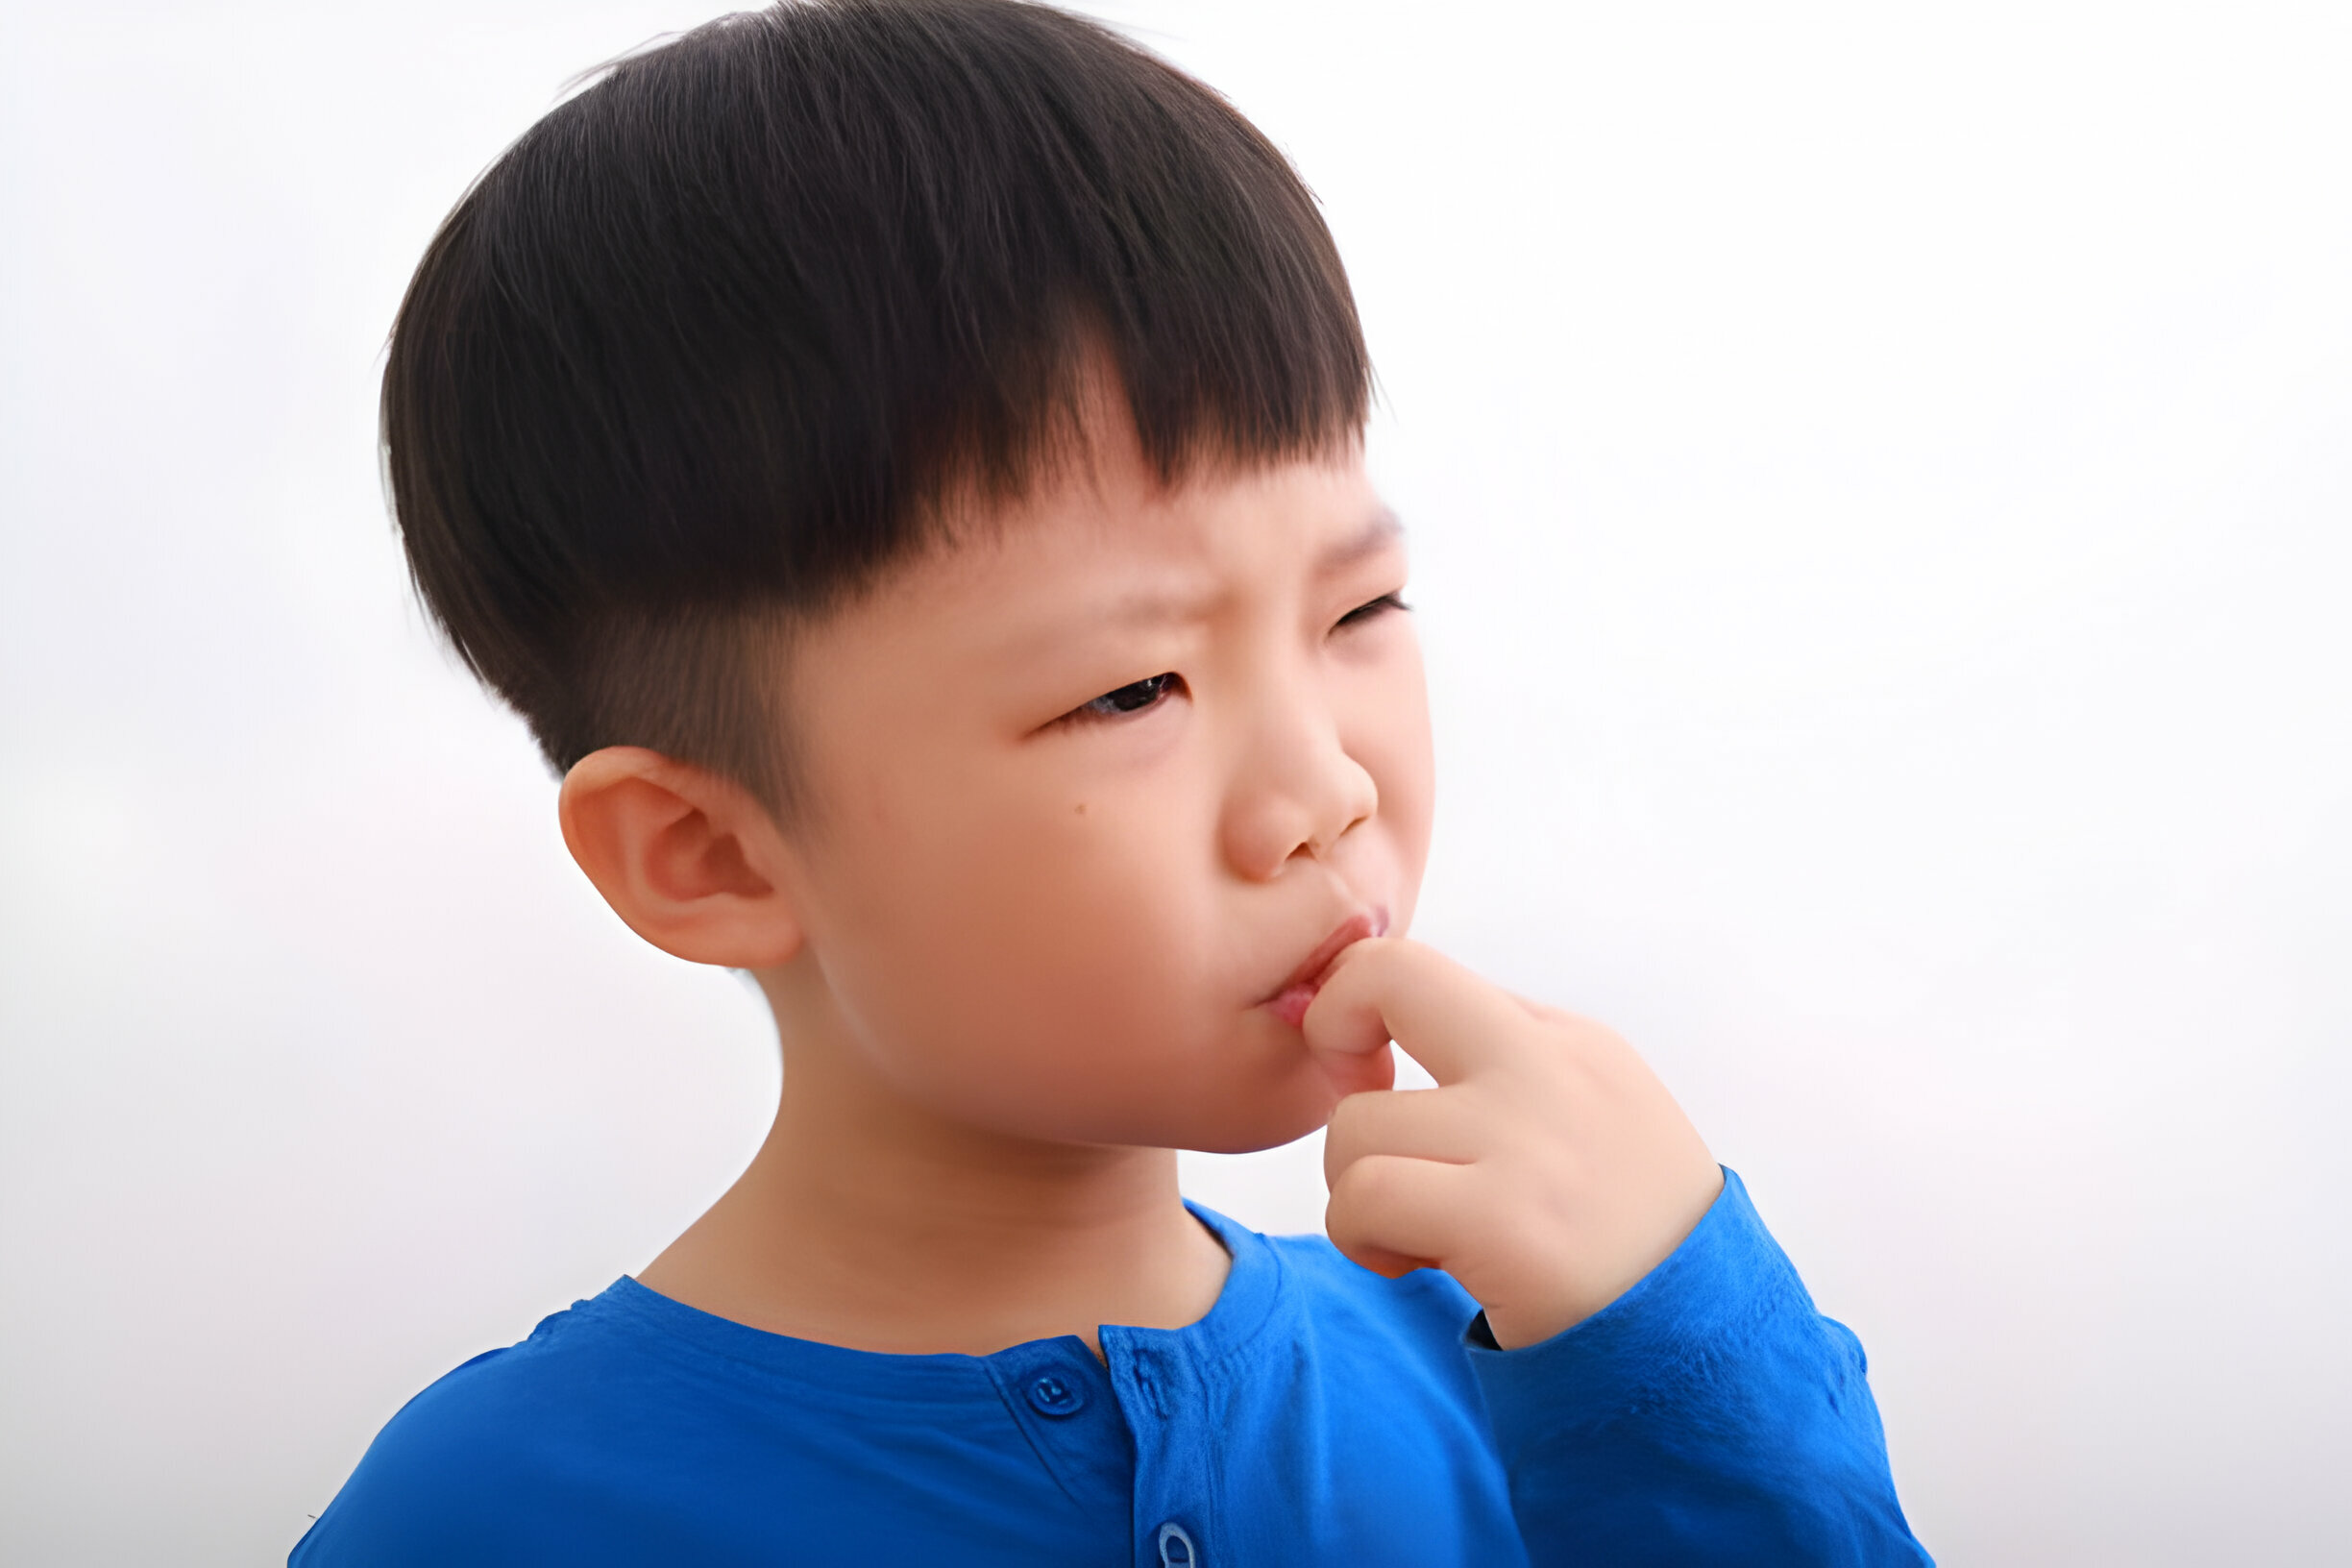 Hati-hati terhadap Kebiasaan Buruk yang Bisa Merusak Gigi pada Anak